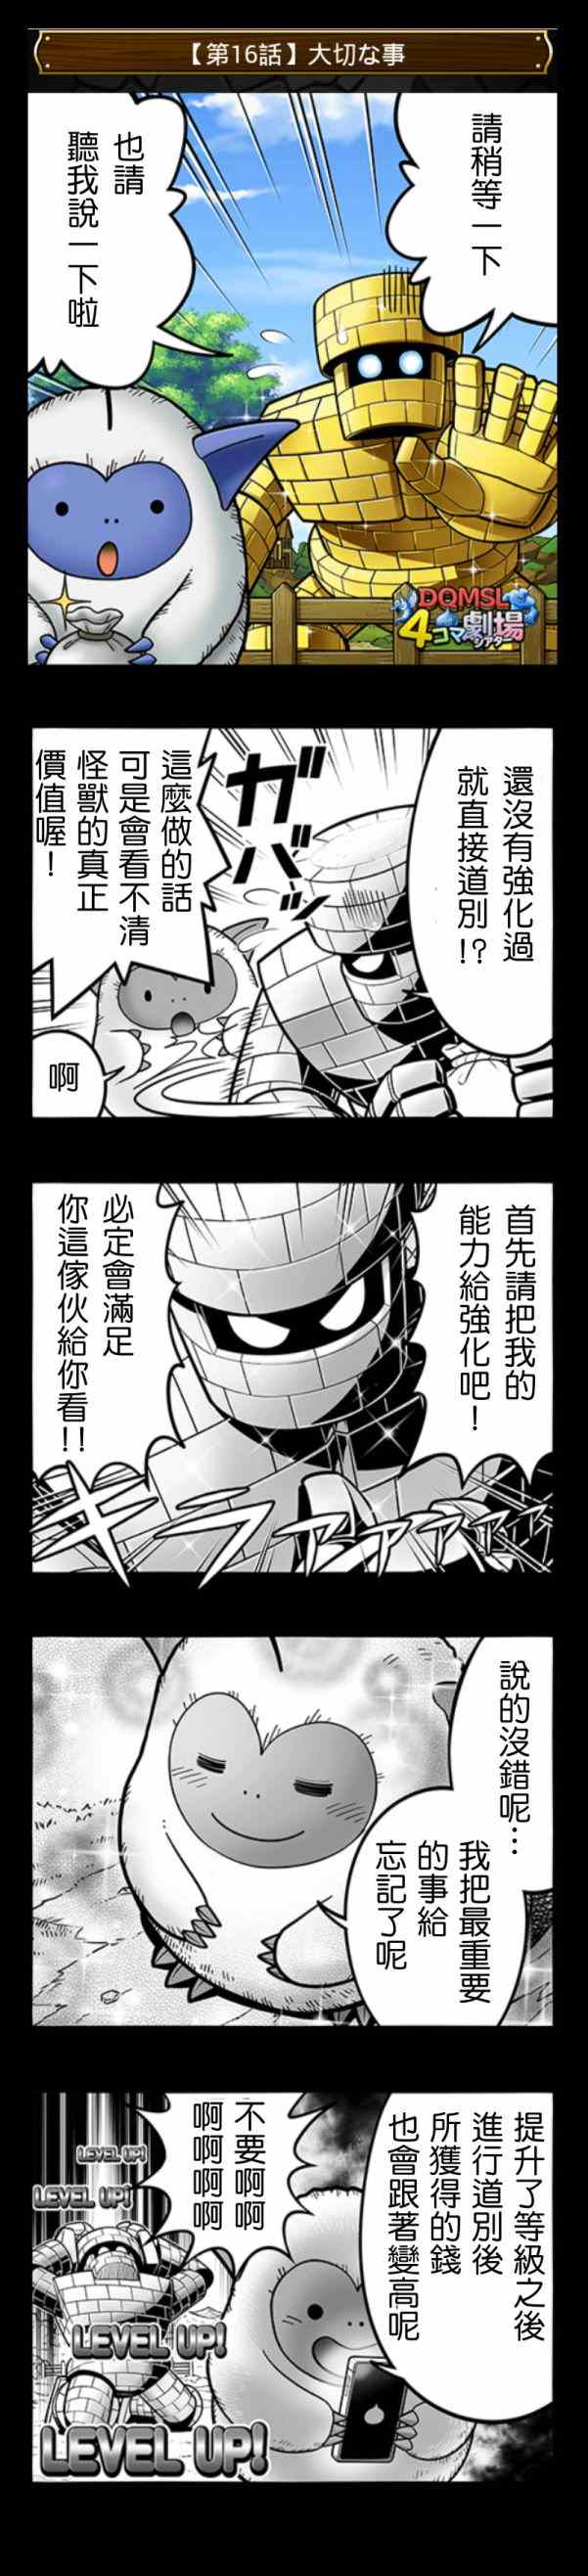 《勇者斗恶龙官方四格》漫画 11-20集